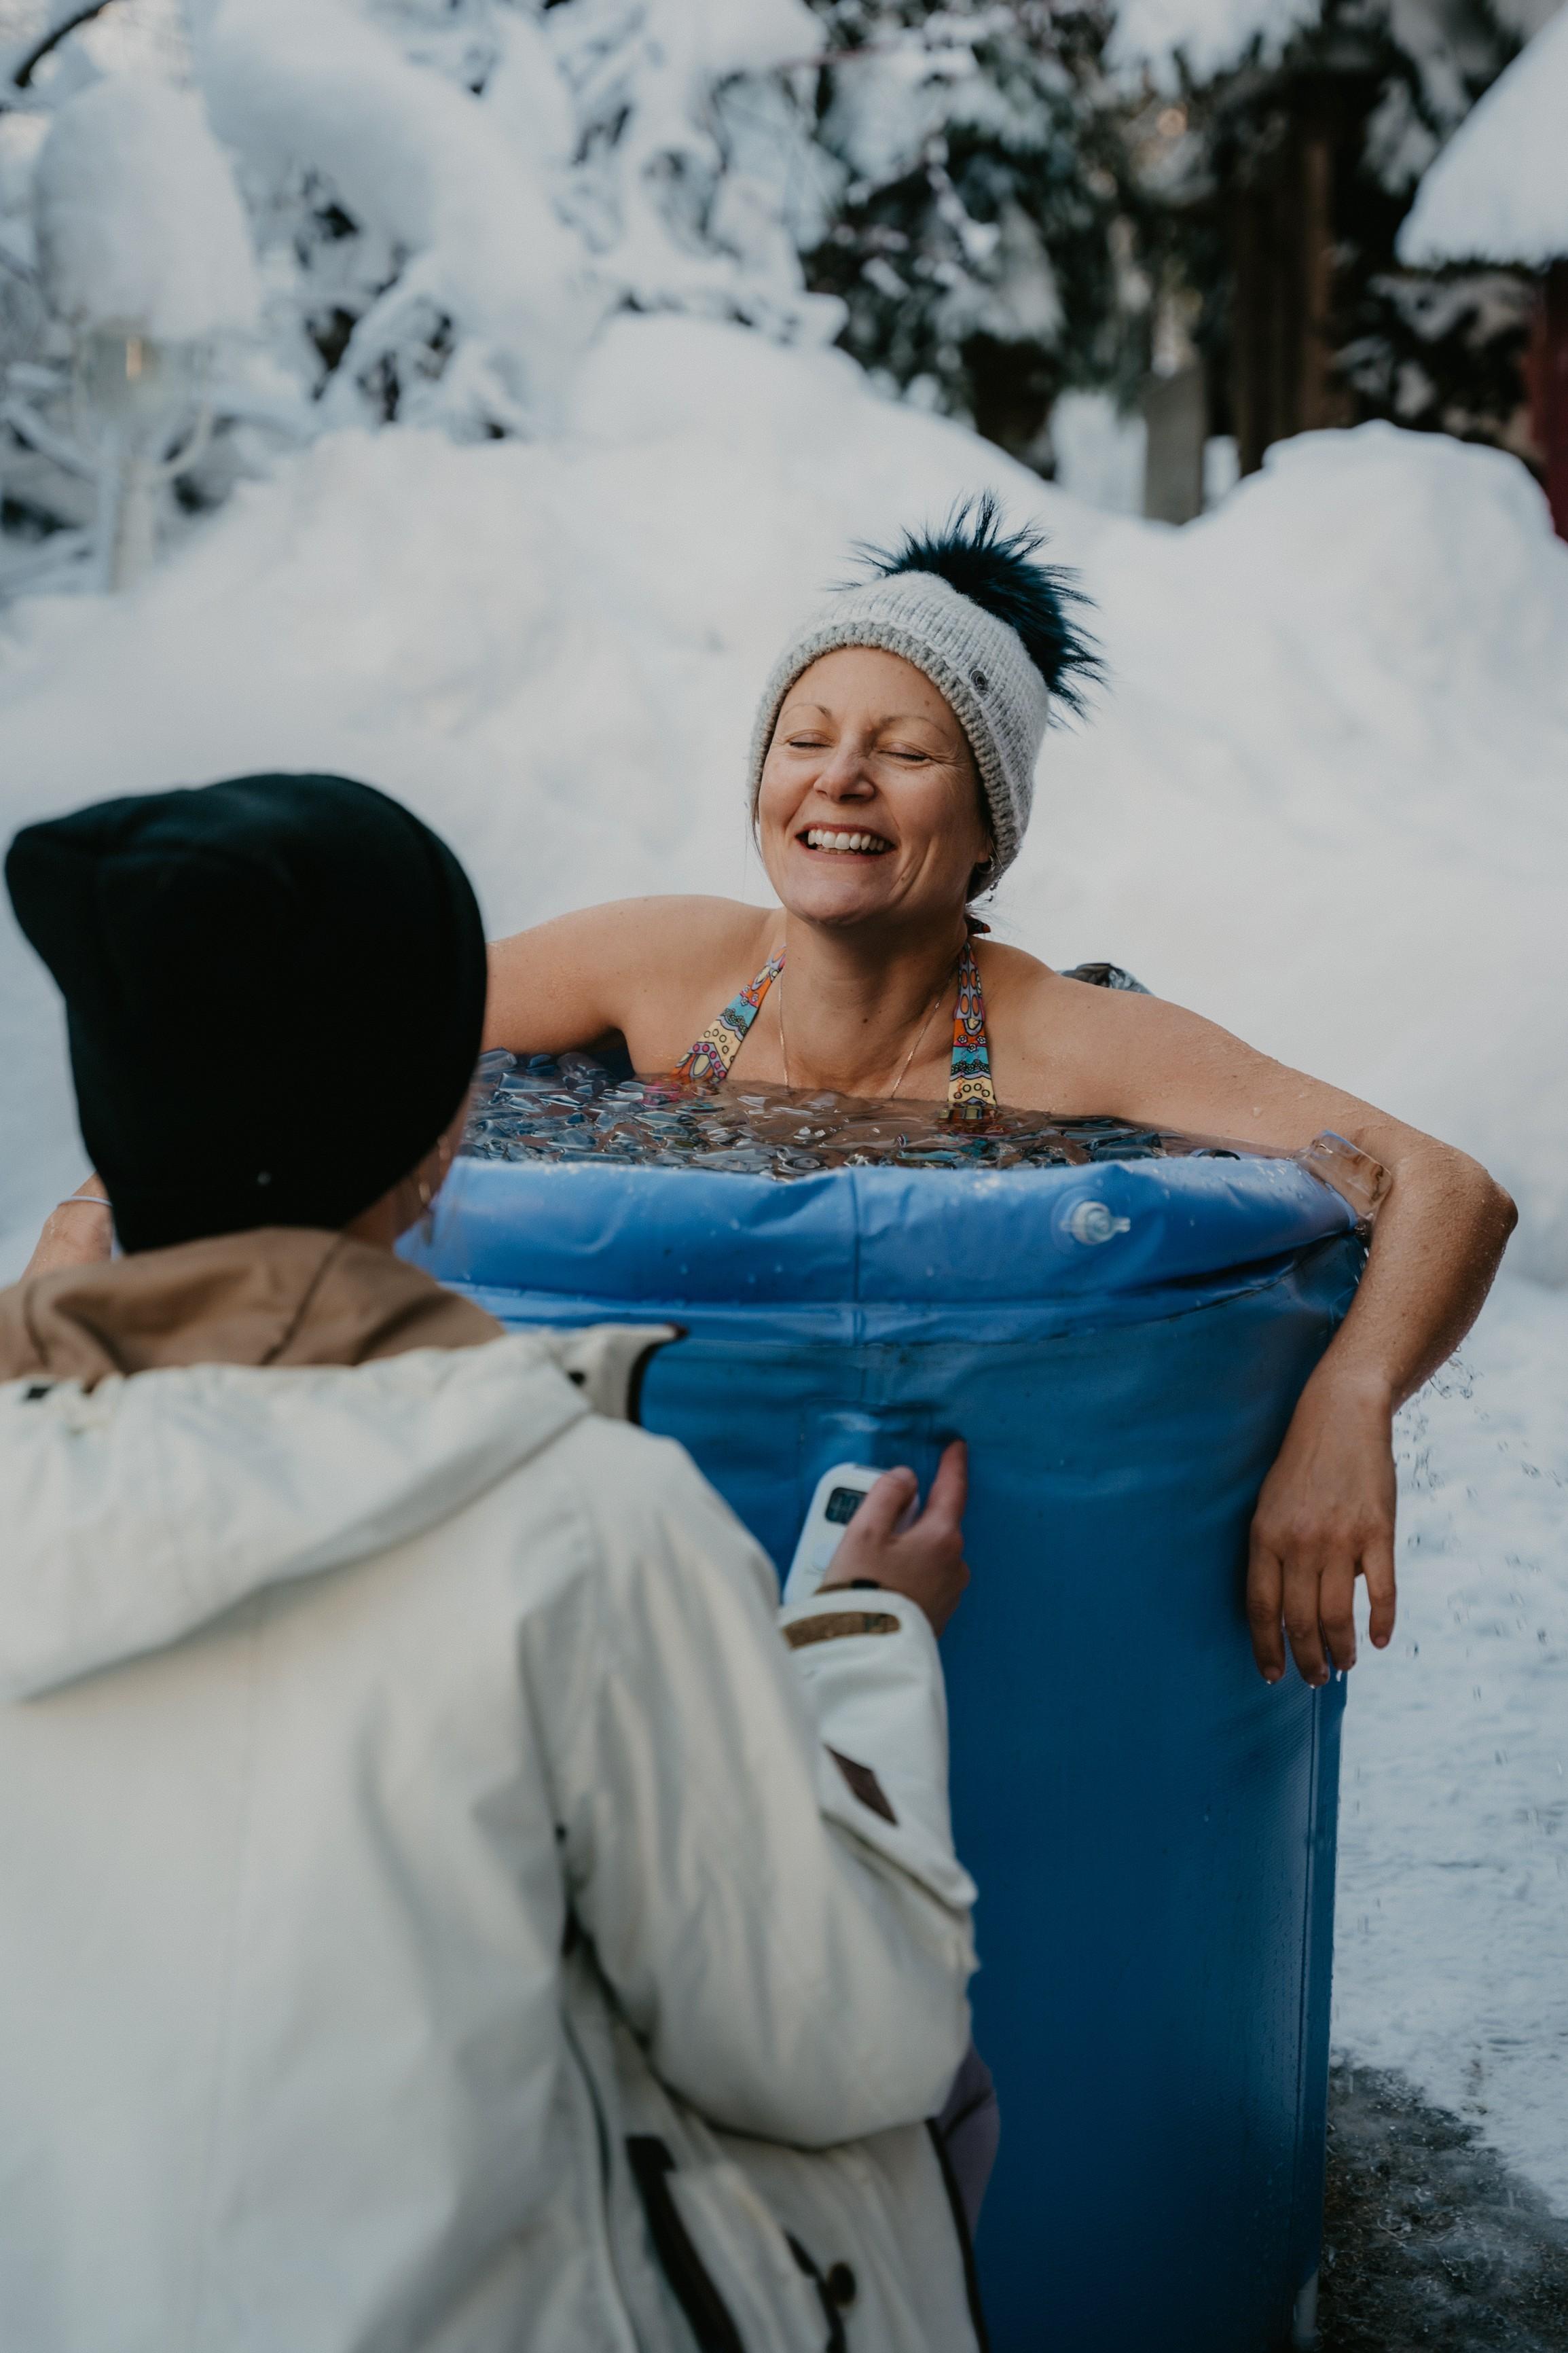 Eine lachende Frau in einer aufblasbaren Recovery Tub beim Eisbaden